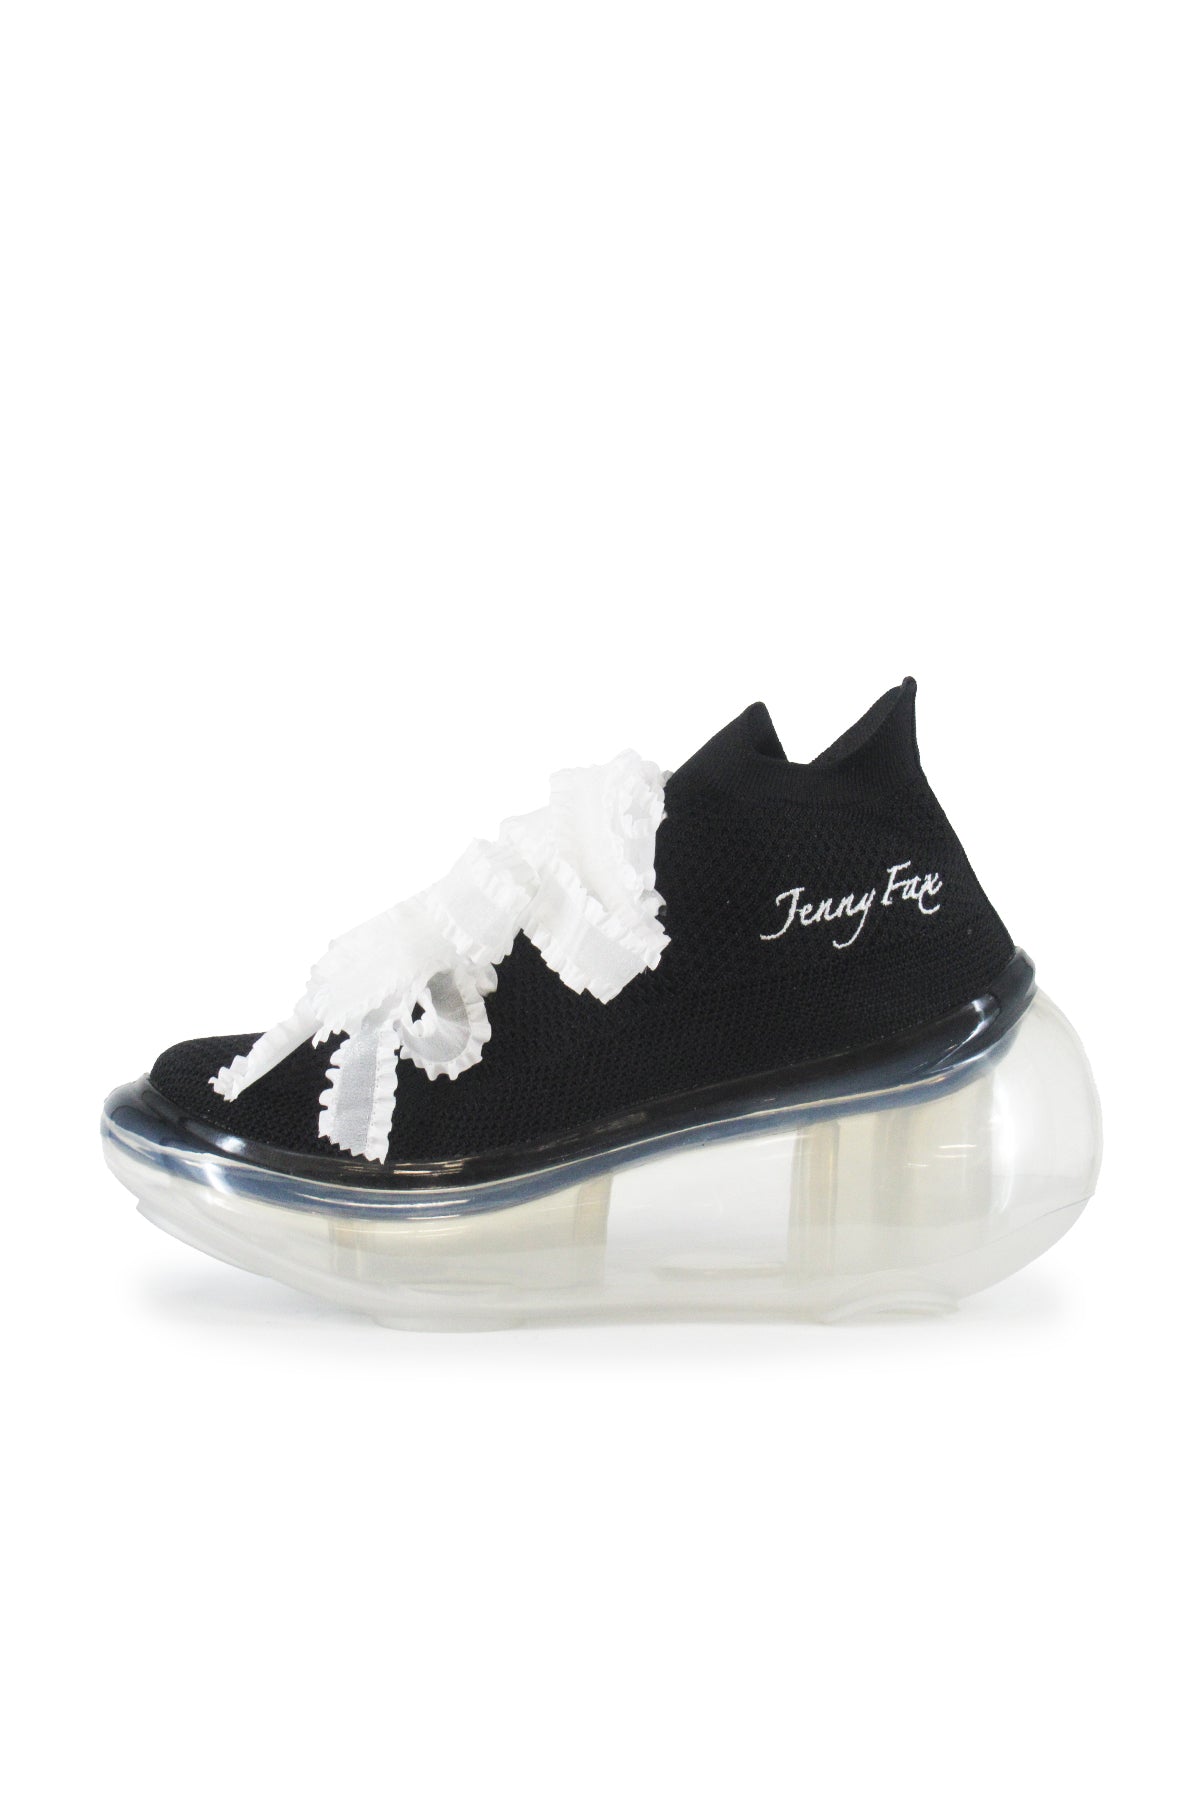 JennyFax Sneaker – MIKIOSAKABE & JennyFax（ミキオサカベ & ジェニー 